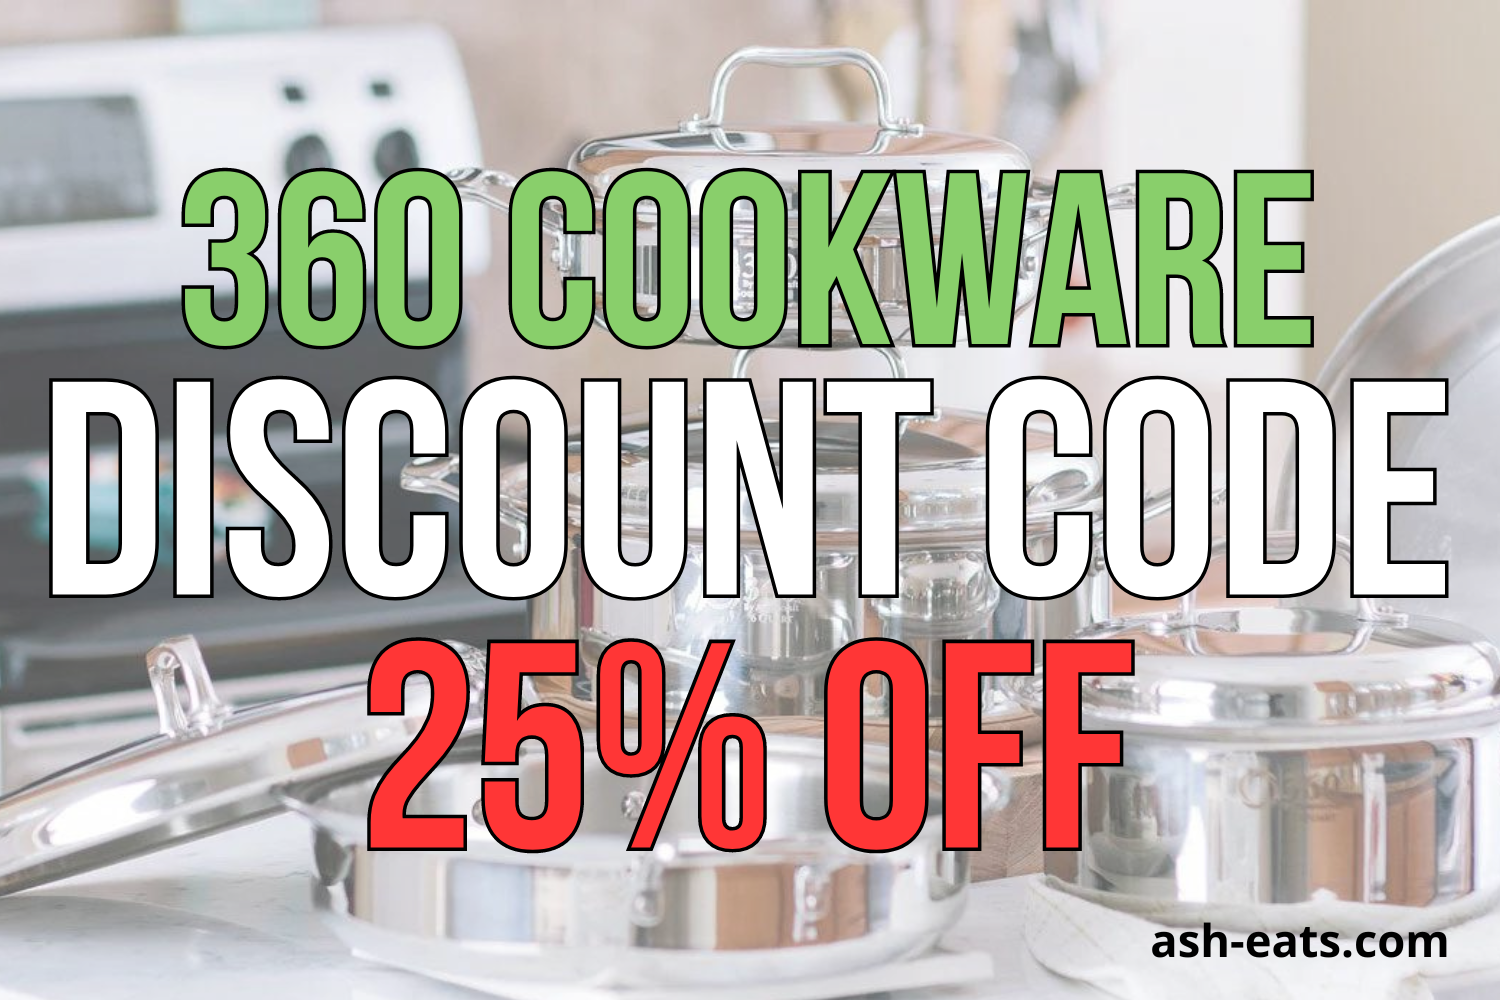 360 cookware discount code